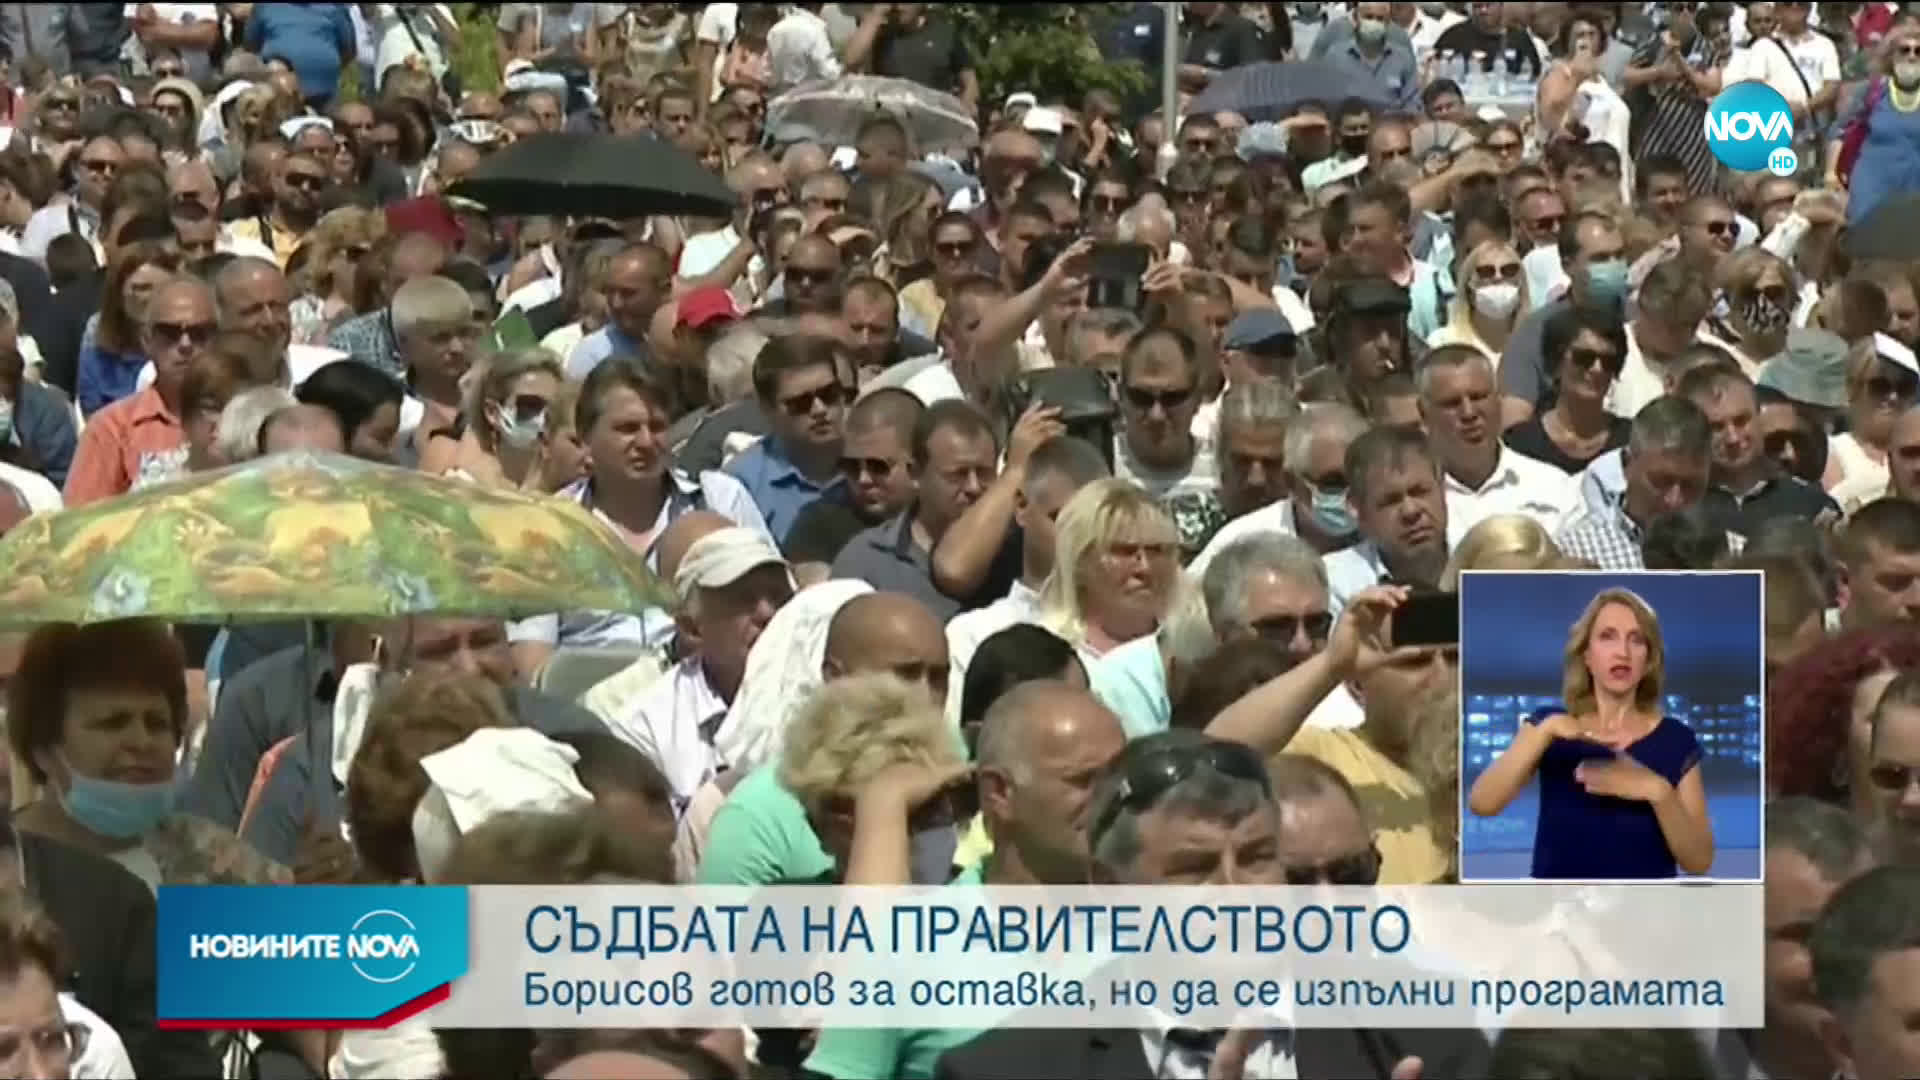 Борисов: Мога да предложа и вариант на правителство без мен